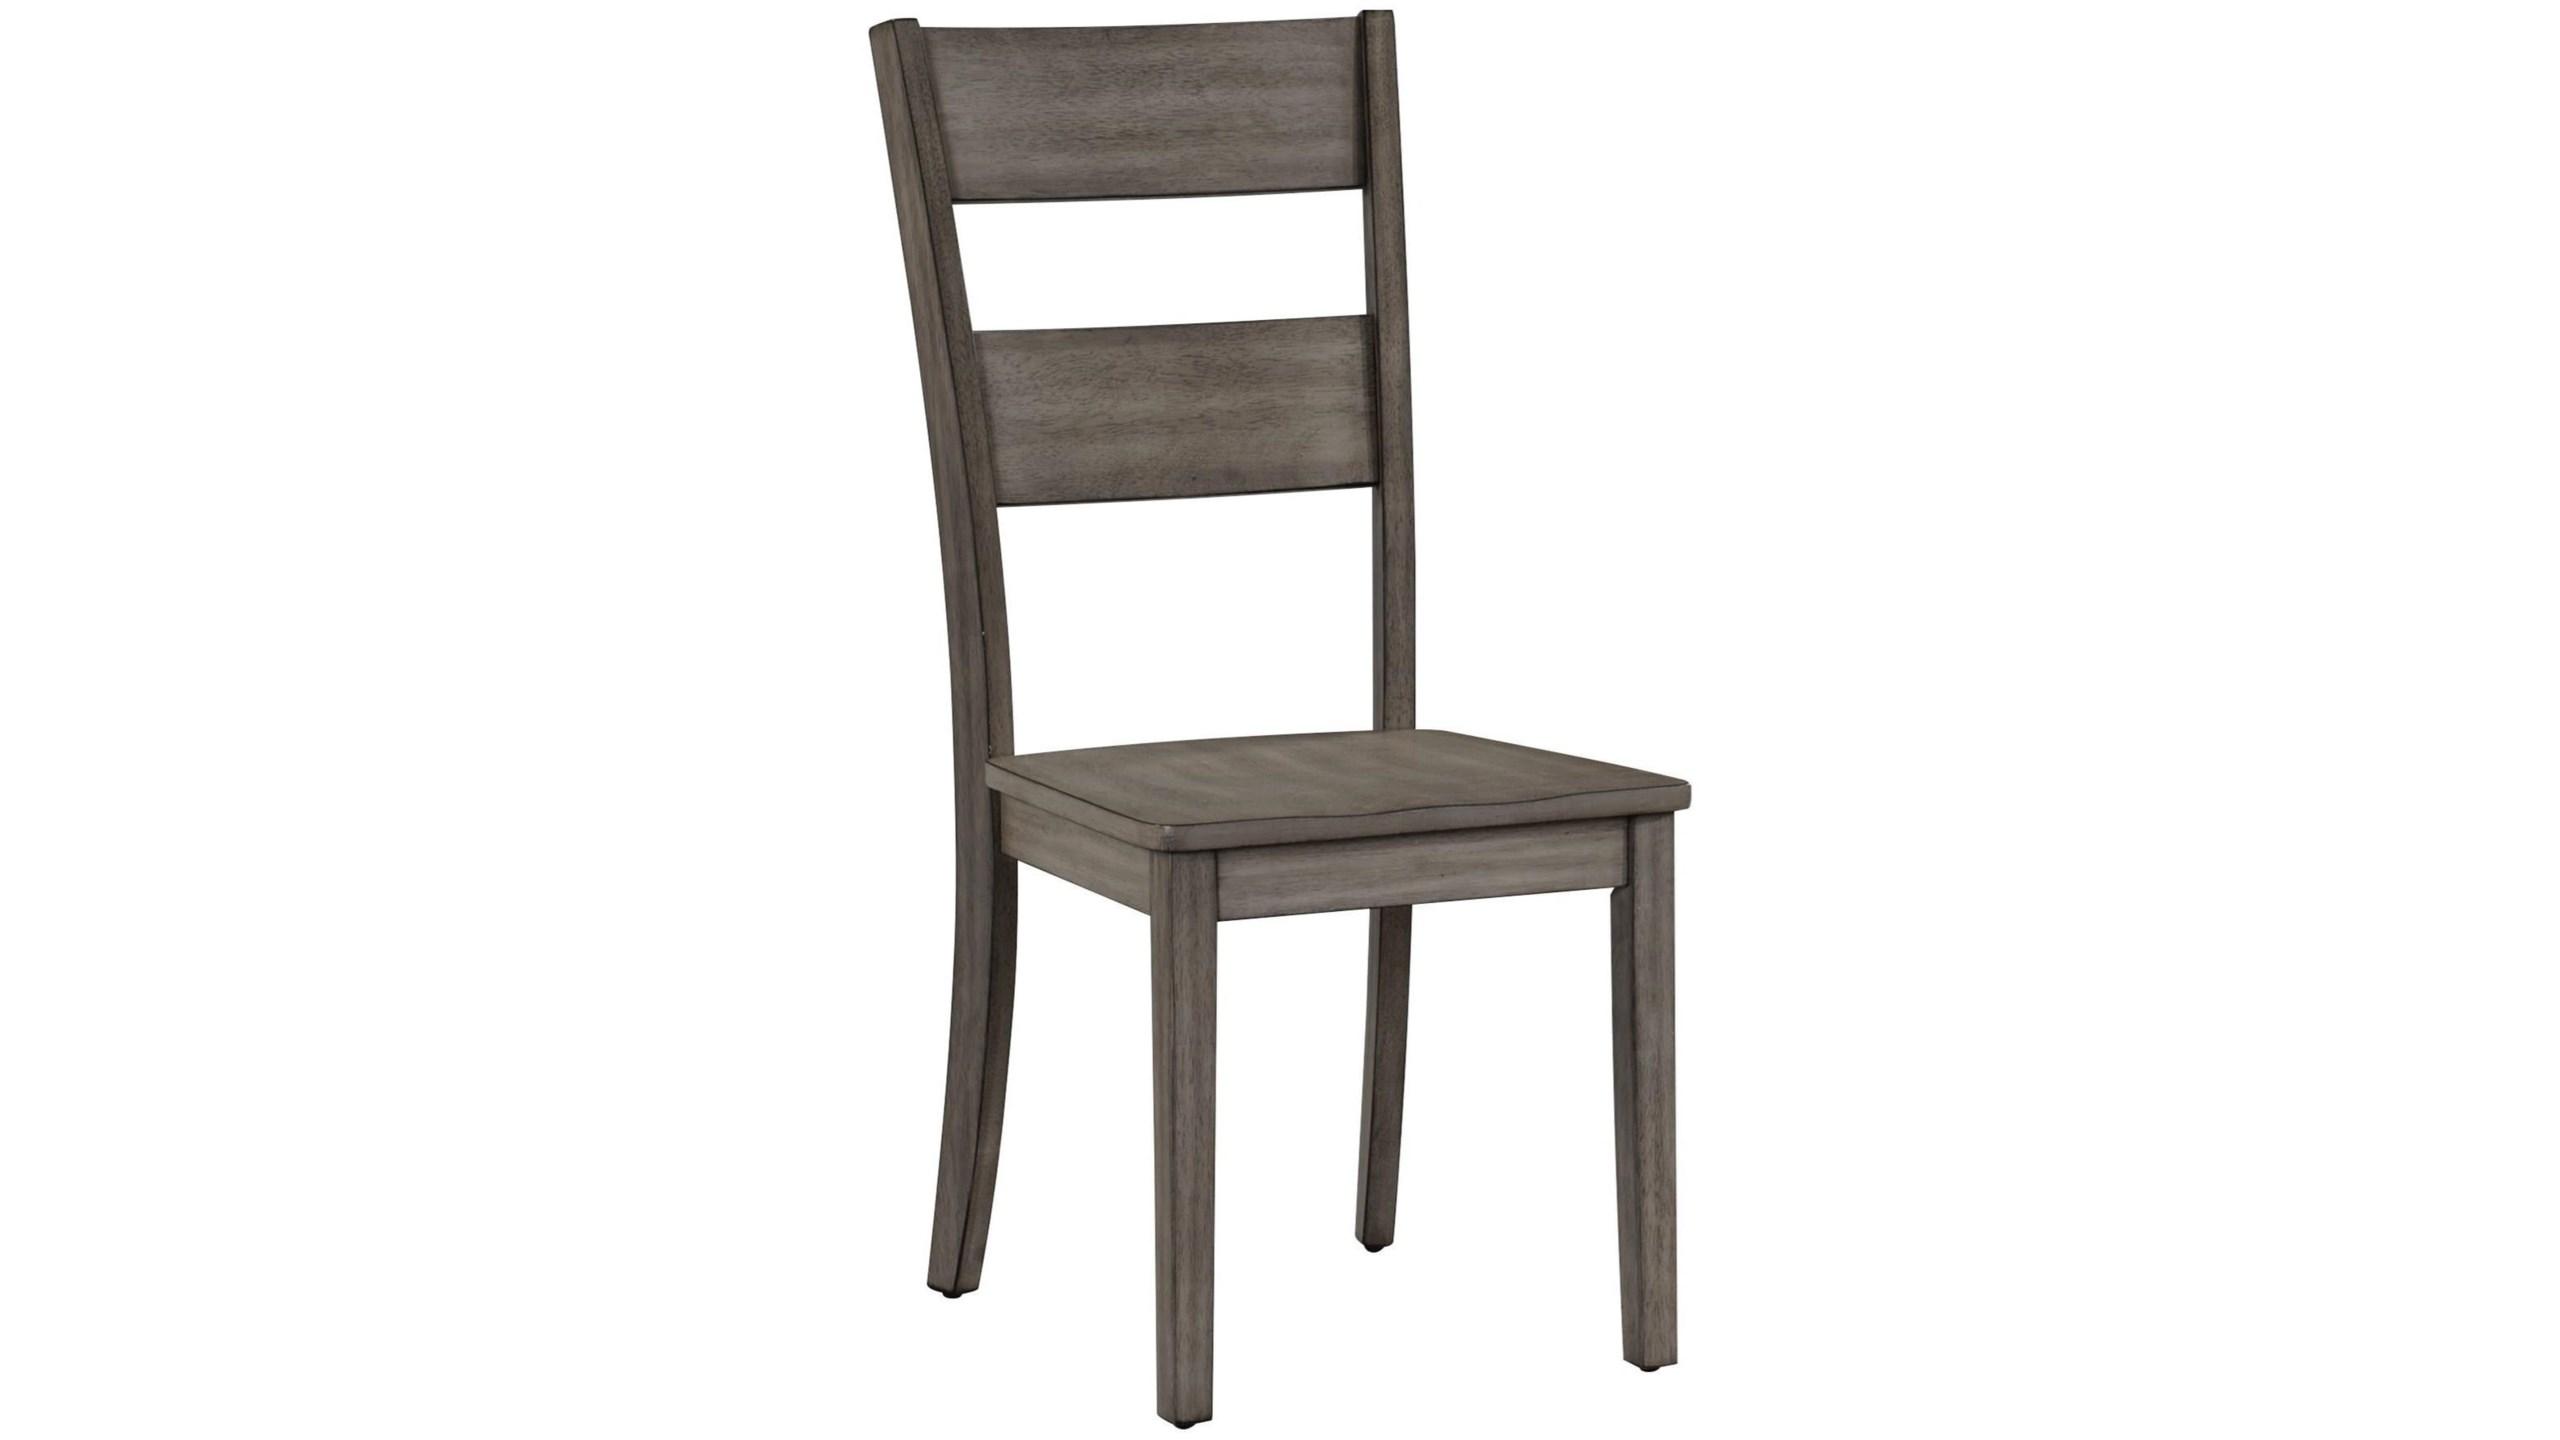 Simple, Farmhouse Dining Chair Set Sean 1131S-2pcs in Ash Gray 